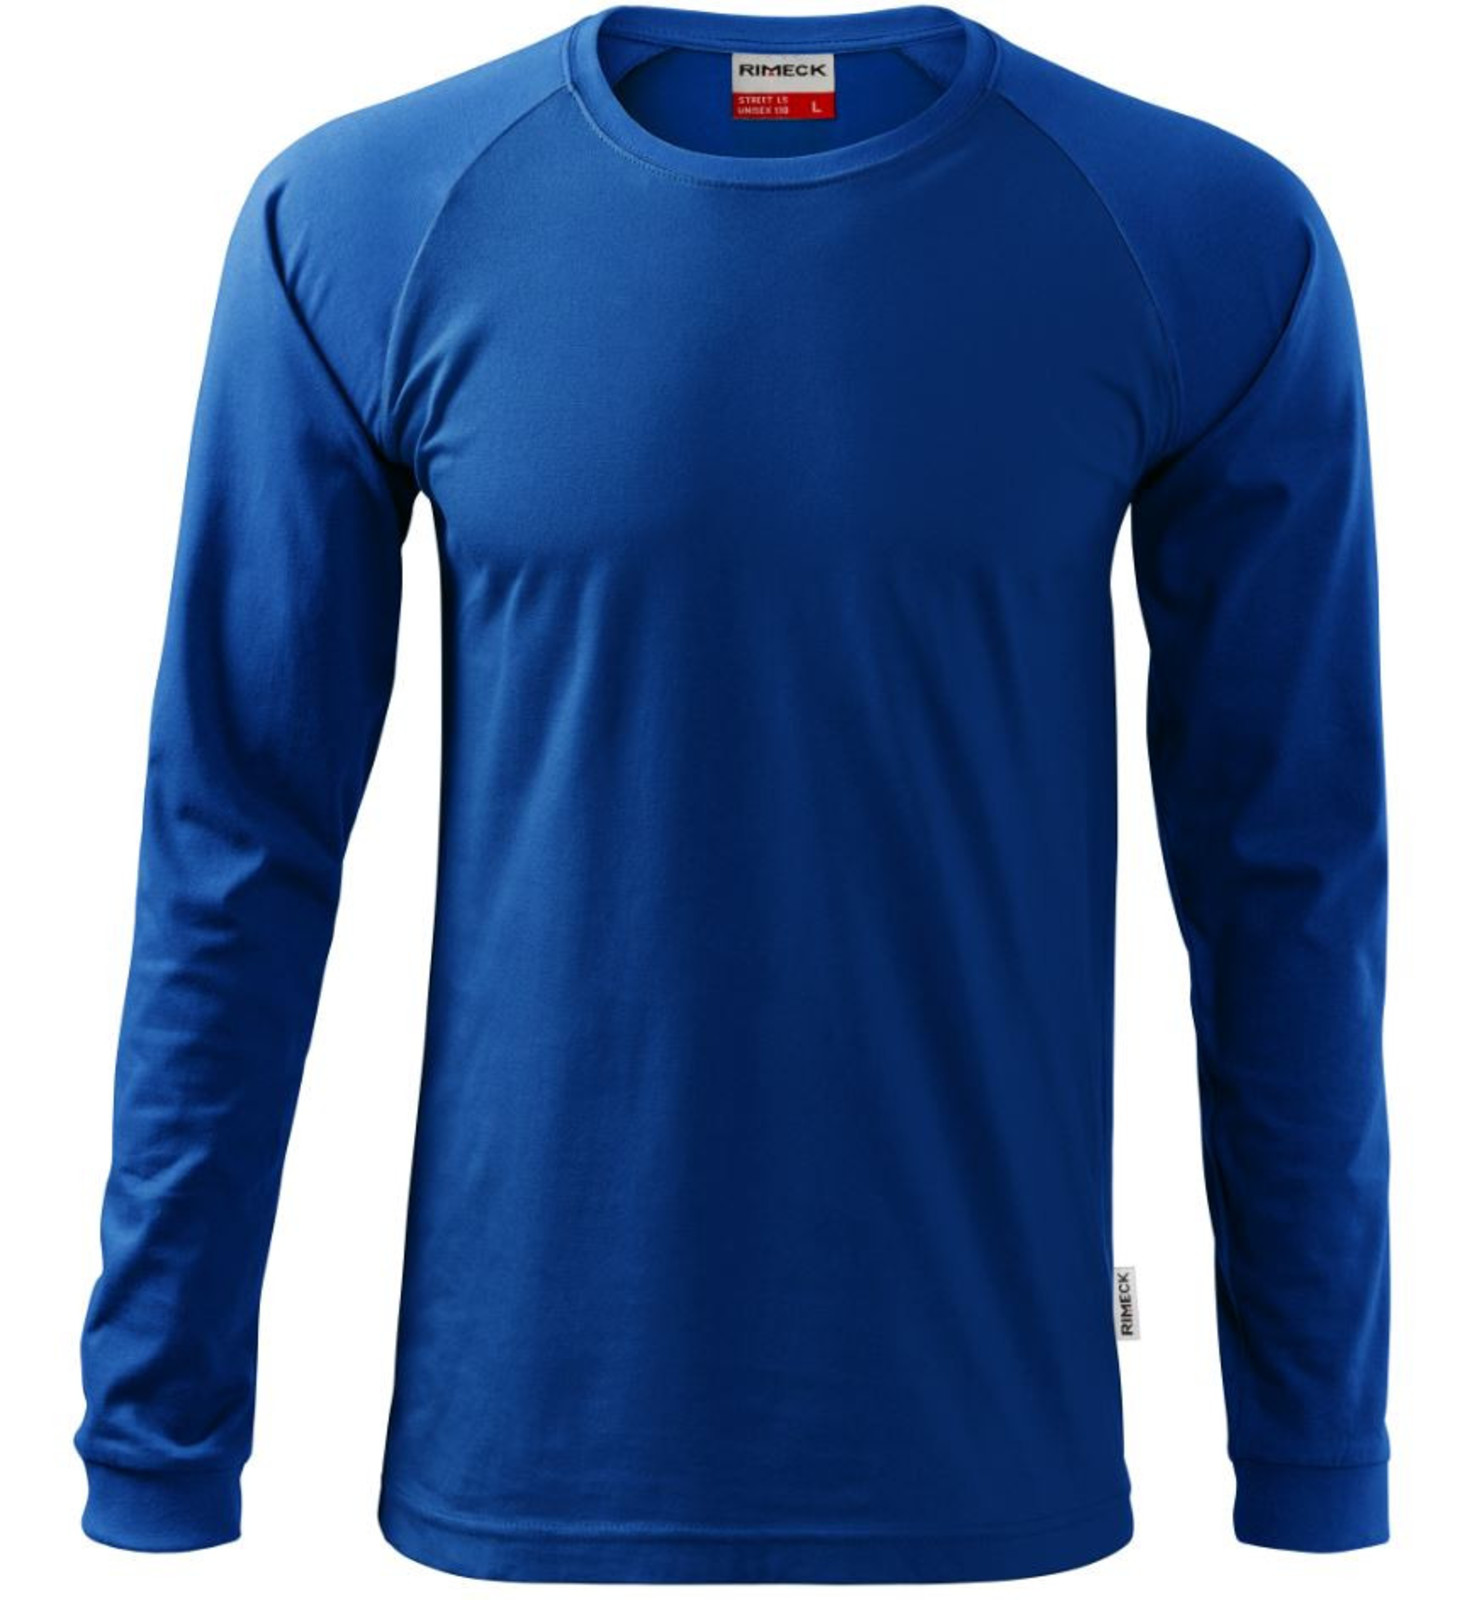 Unisex tričko s dlhým rukávom Rimeck Street LS 130 - veľkosť: S, farba: kráľovská modrá